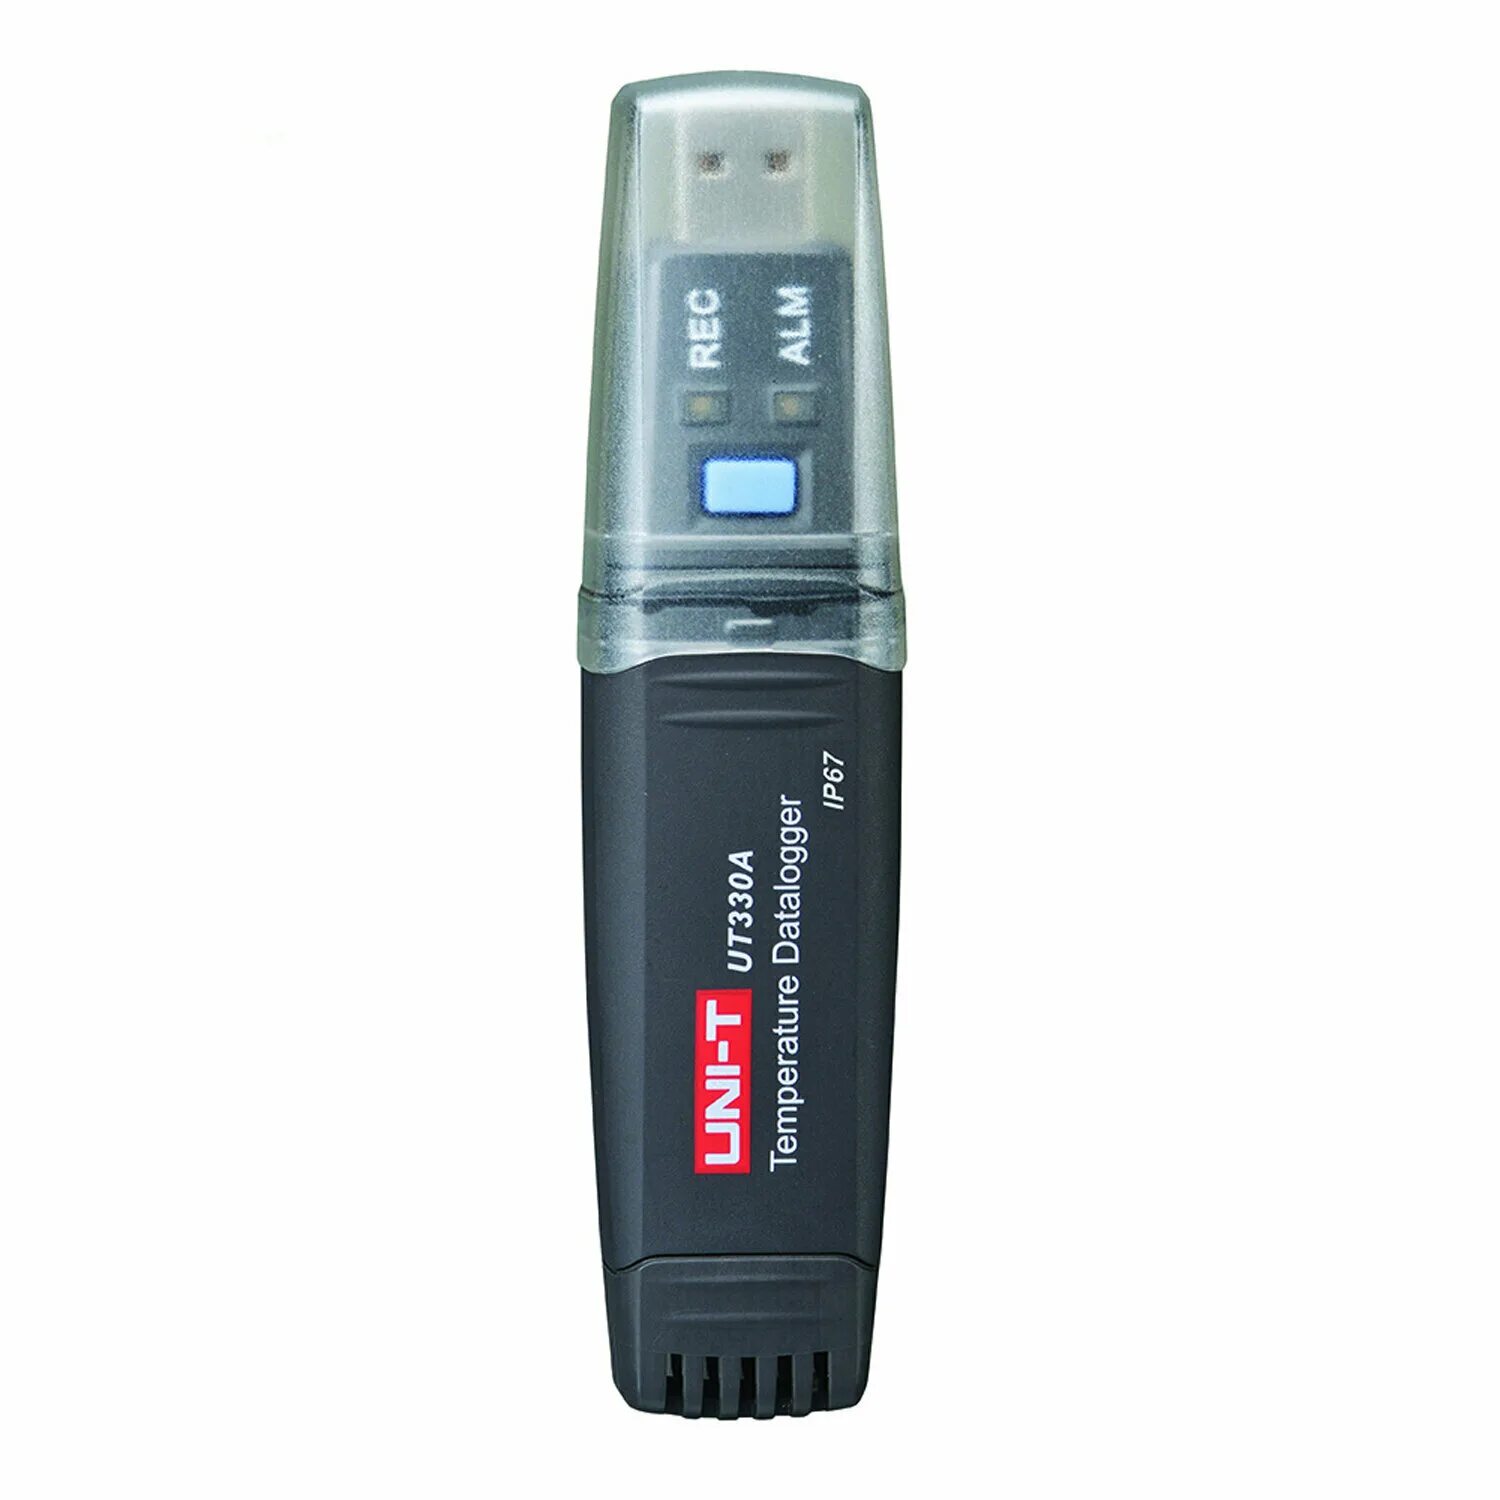 Регистратор температуры и влажности. Uni-t ut330b измерители влажности. USB data Logger Uni-t ut330 c. Uni t ut330 Review. Логгер температуры, влажности и давления ut330c.